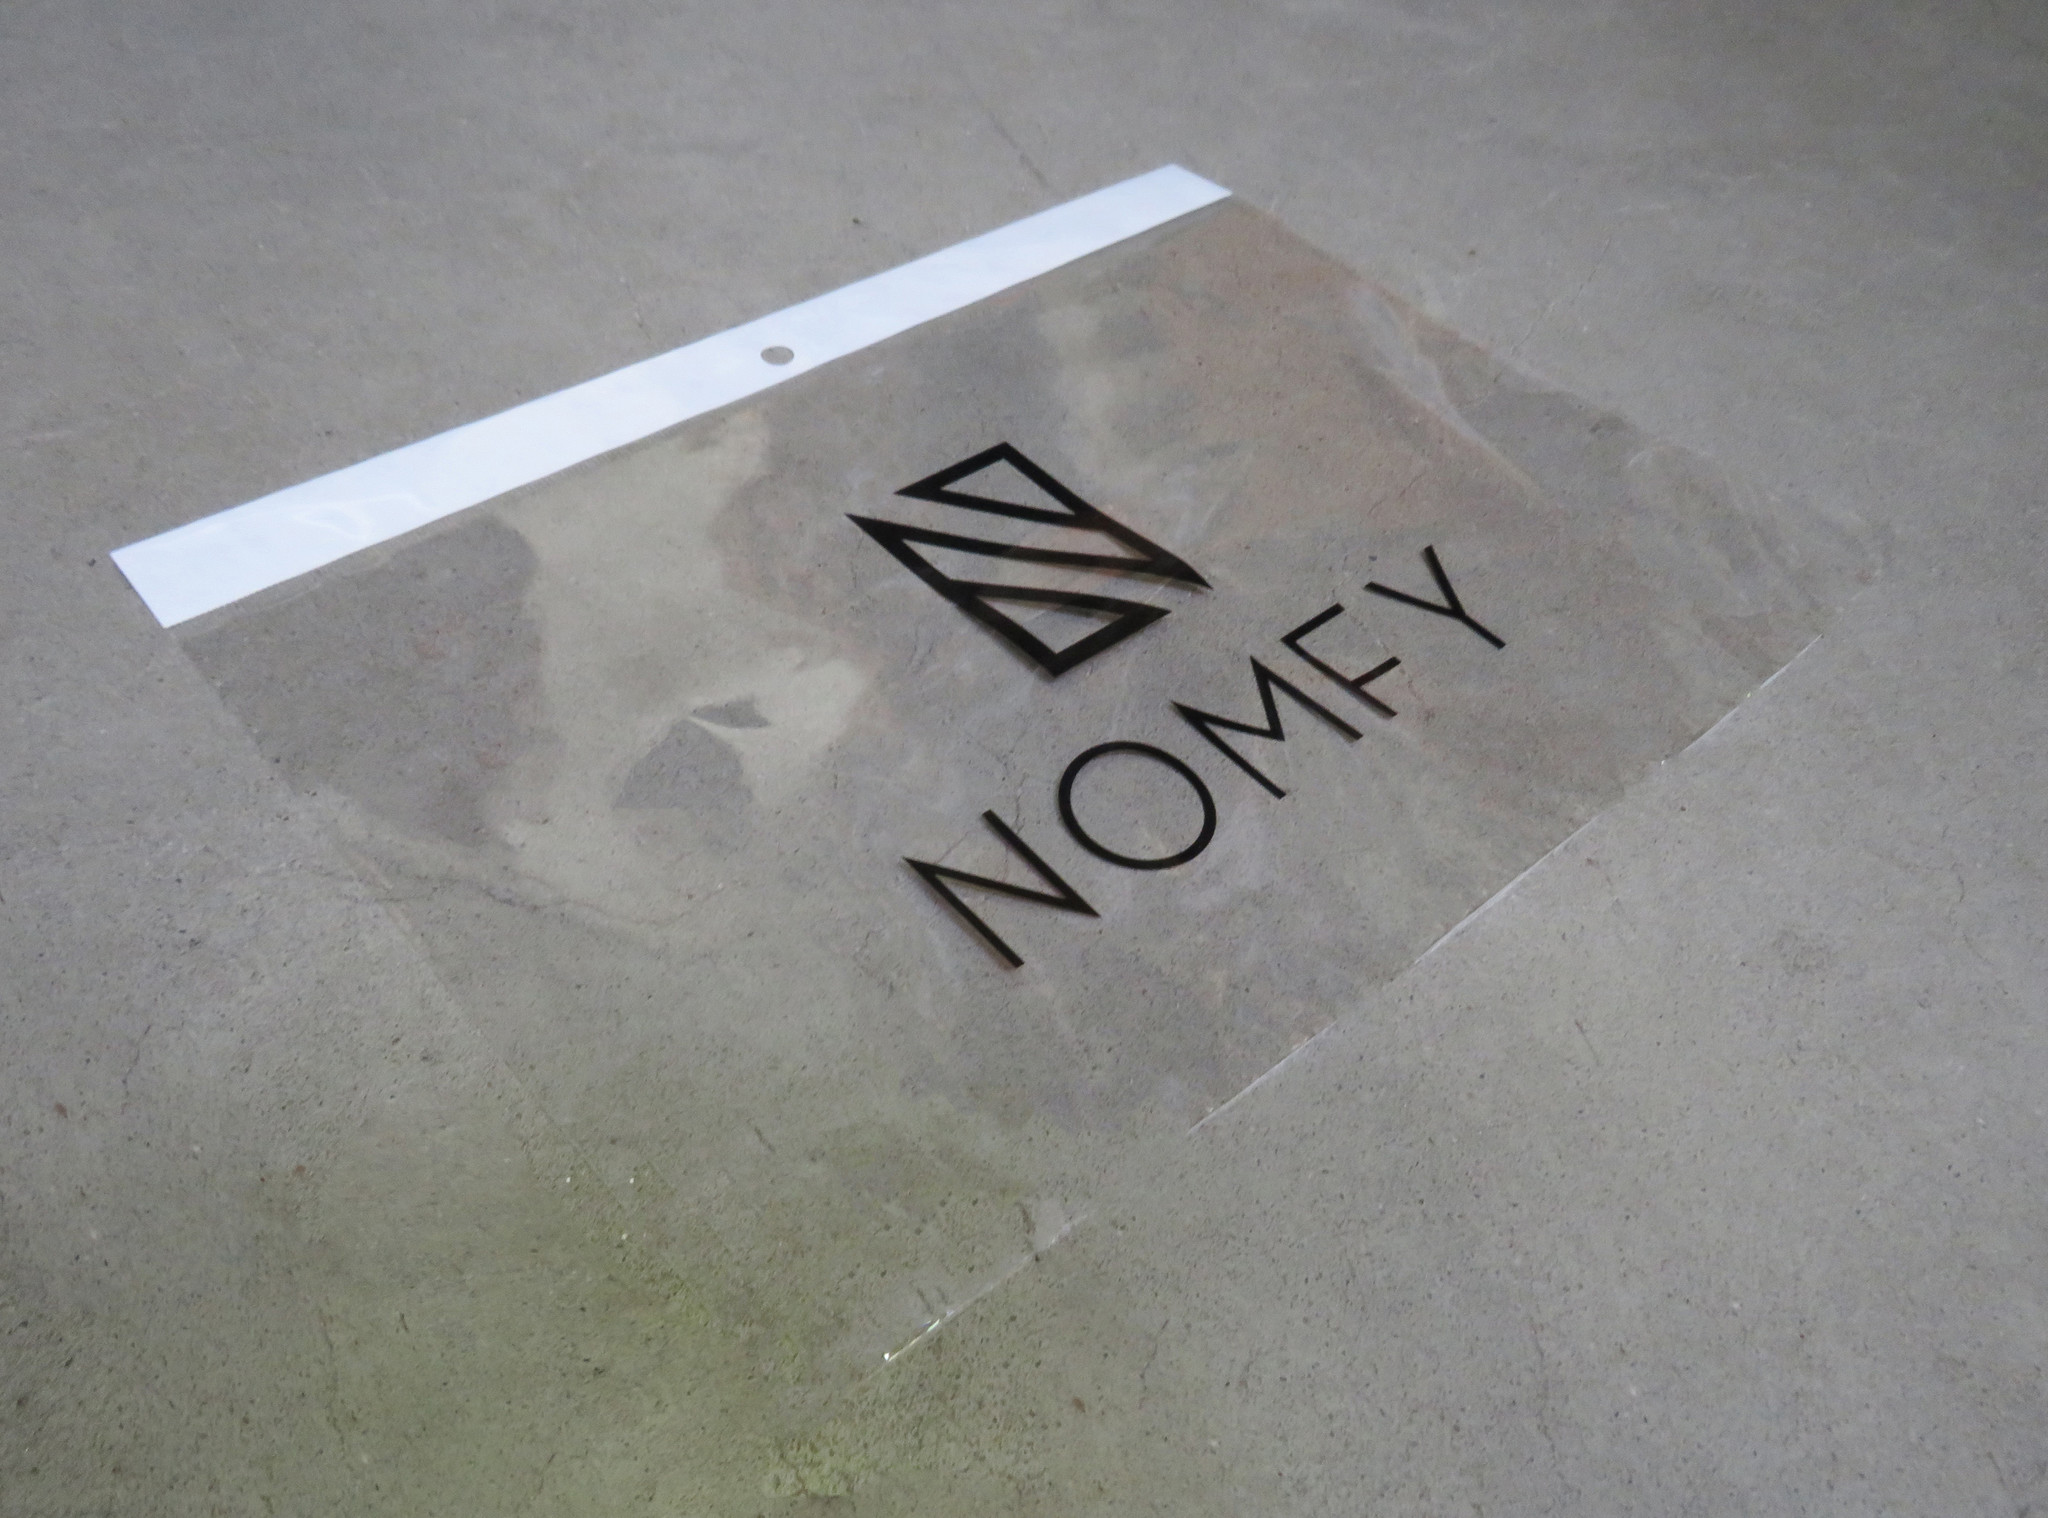 Nomfy Nomfy iPad Pro 11 inch (2020) Screenprotector - 2 PACK